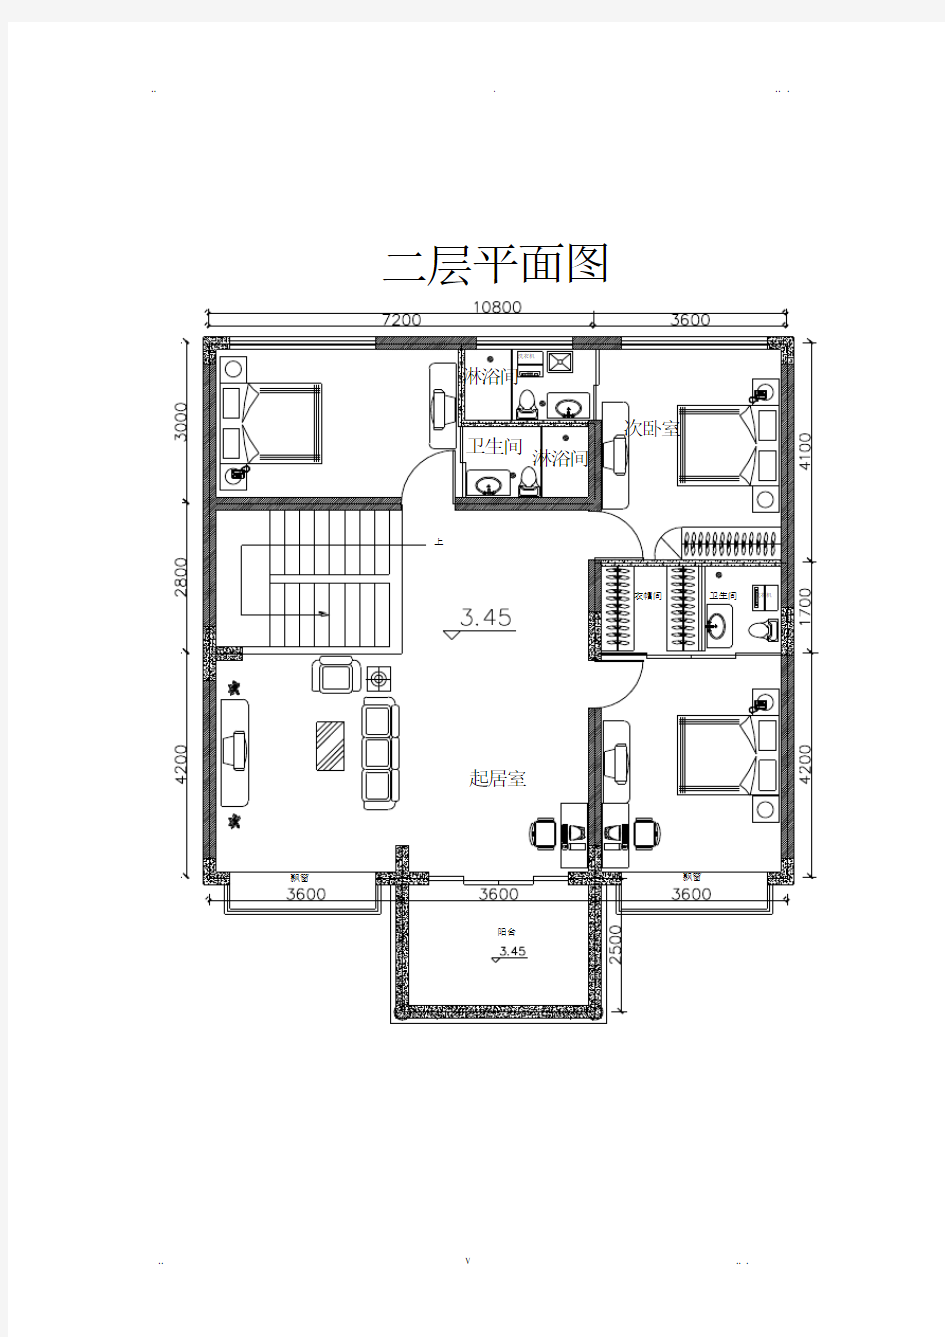 房屋设计平面图CAD图